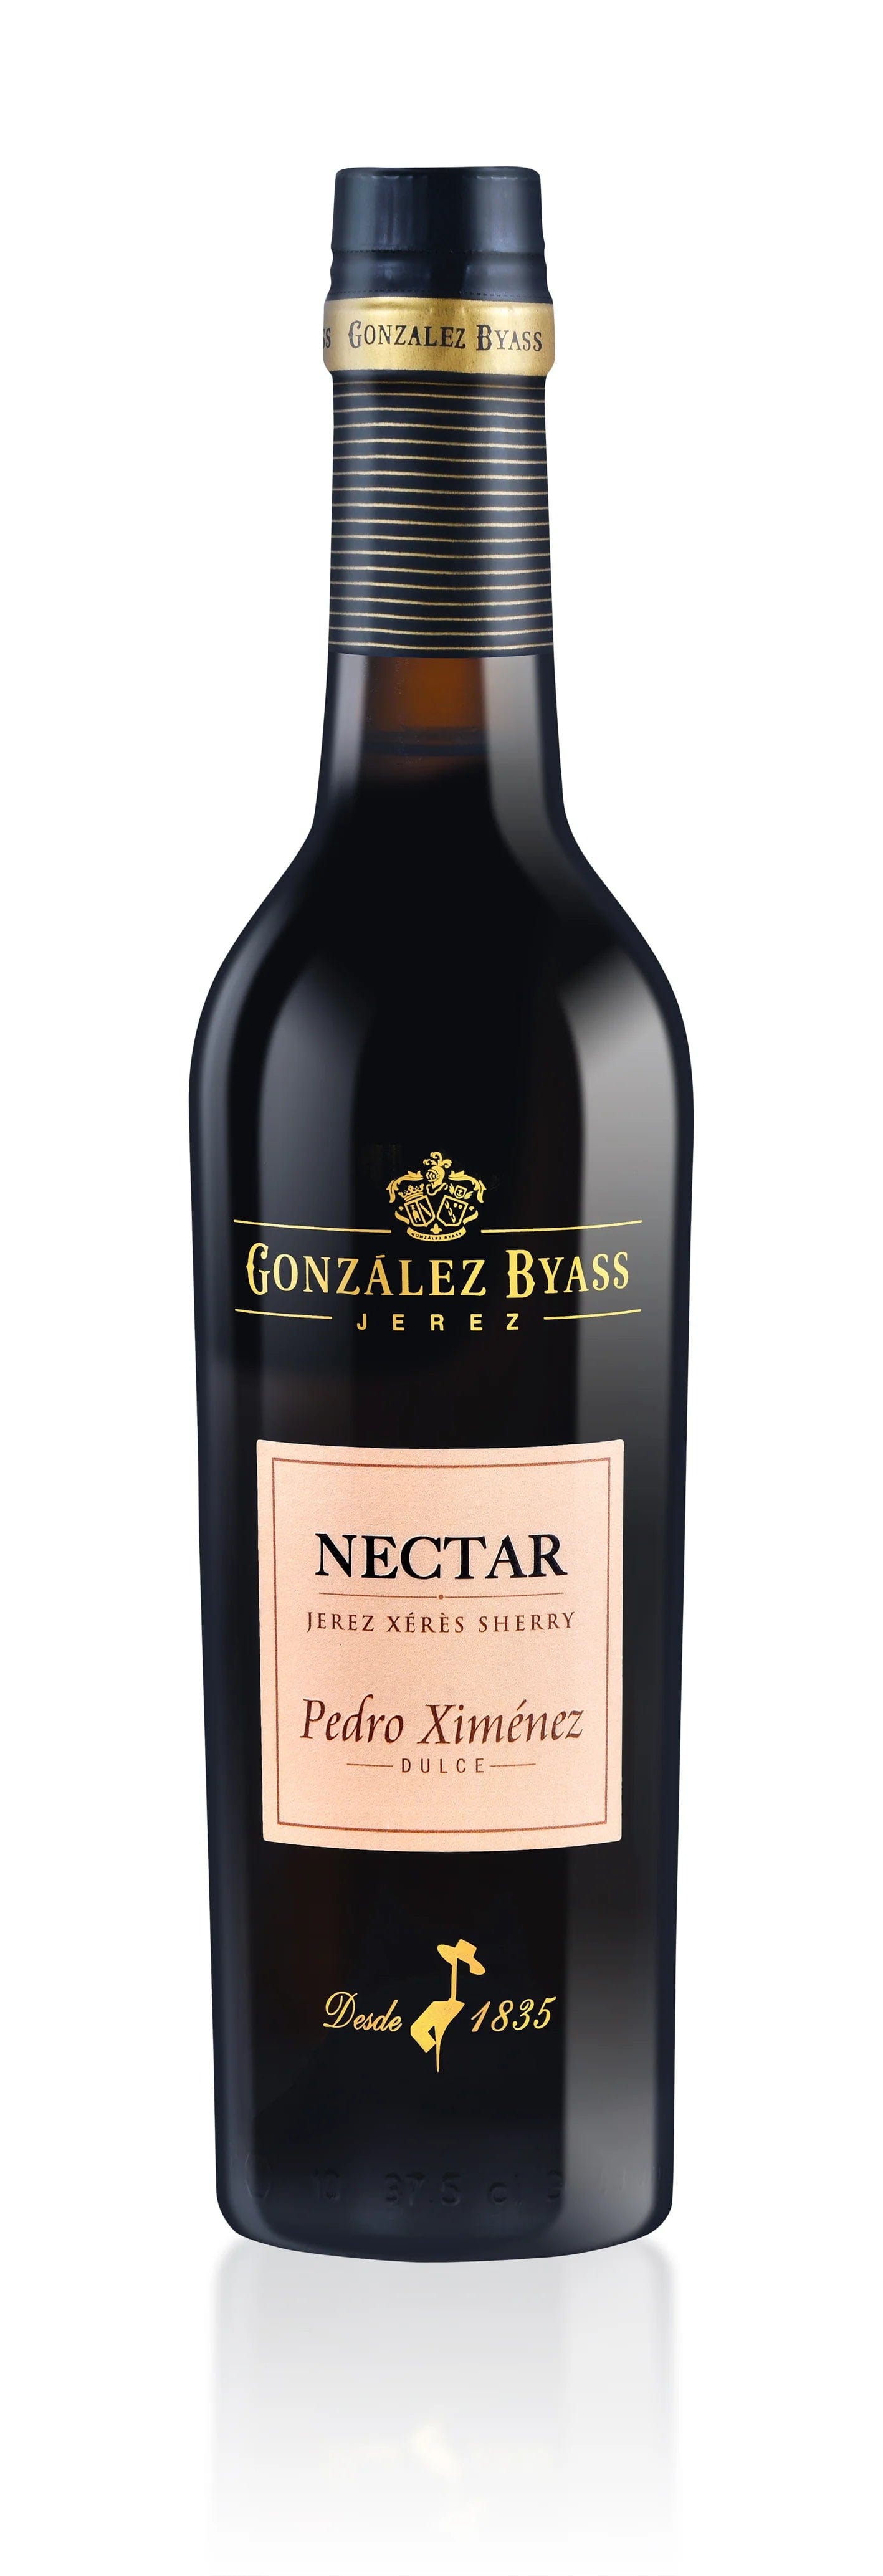 Wine Pedro Nectar Dulce 375ml Ximenez Triangle Sherry Company – Byass Gonzalez